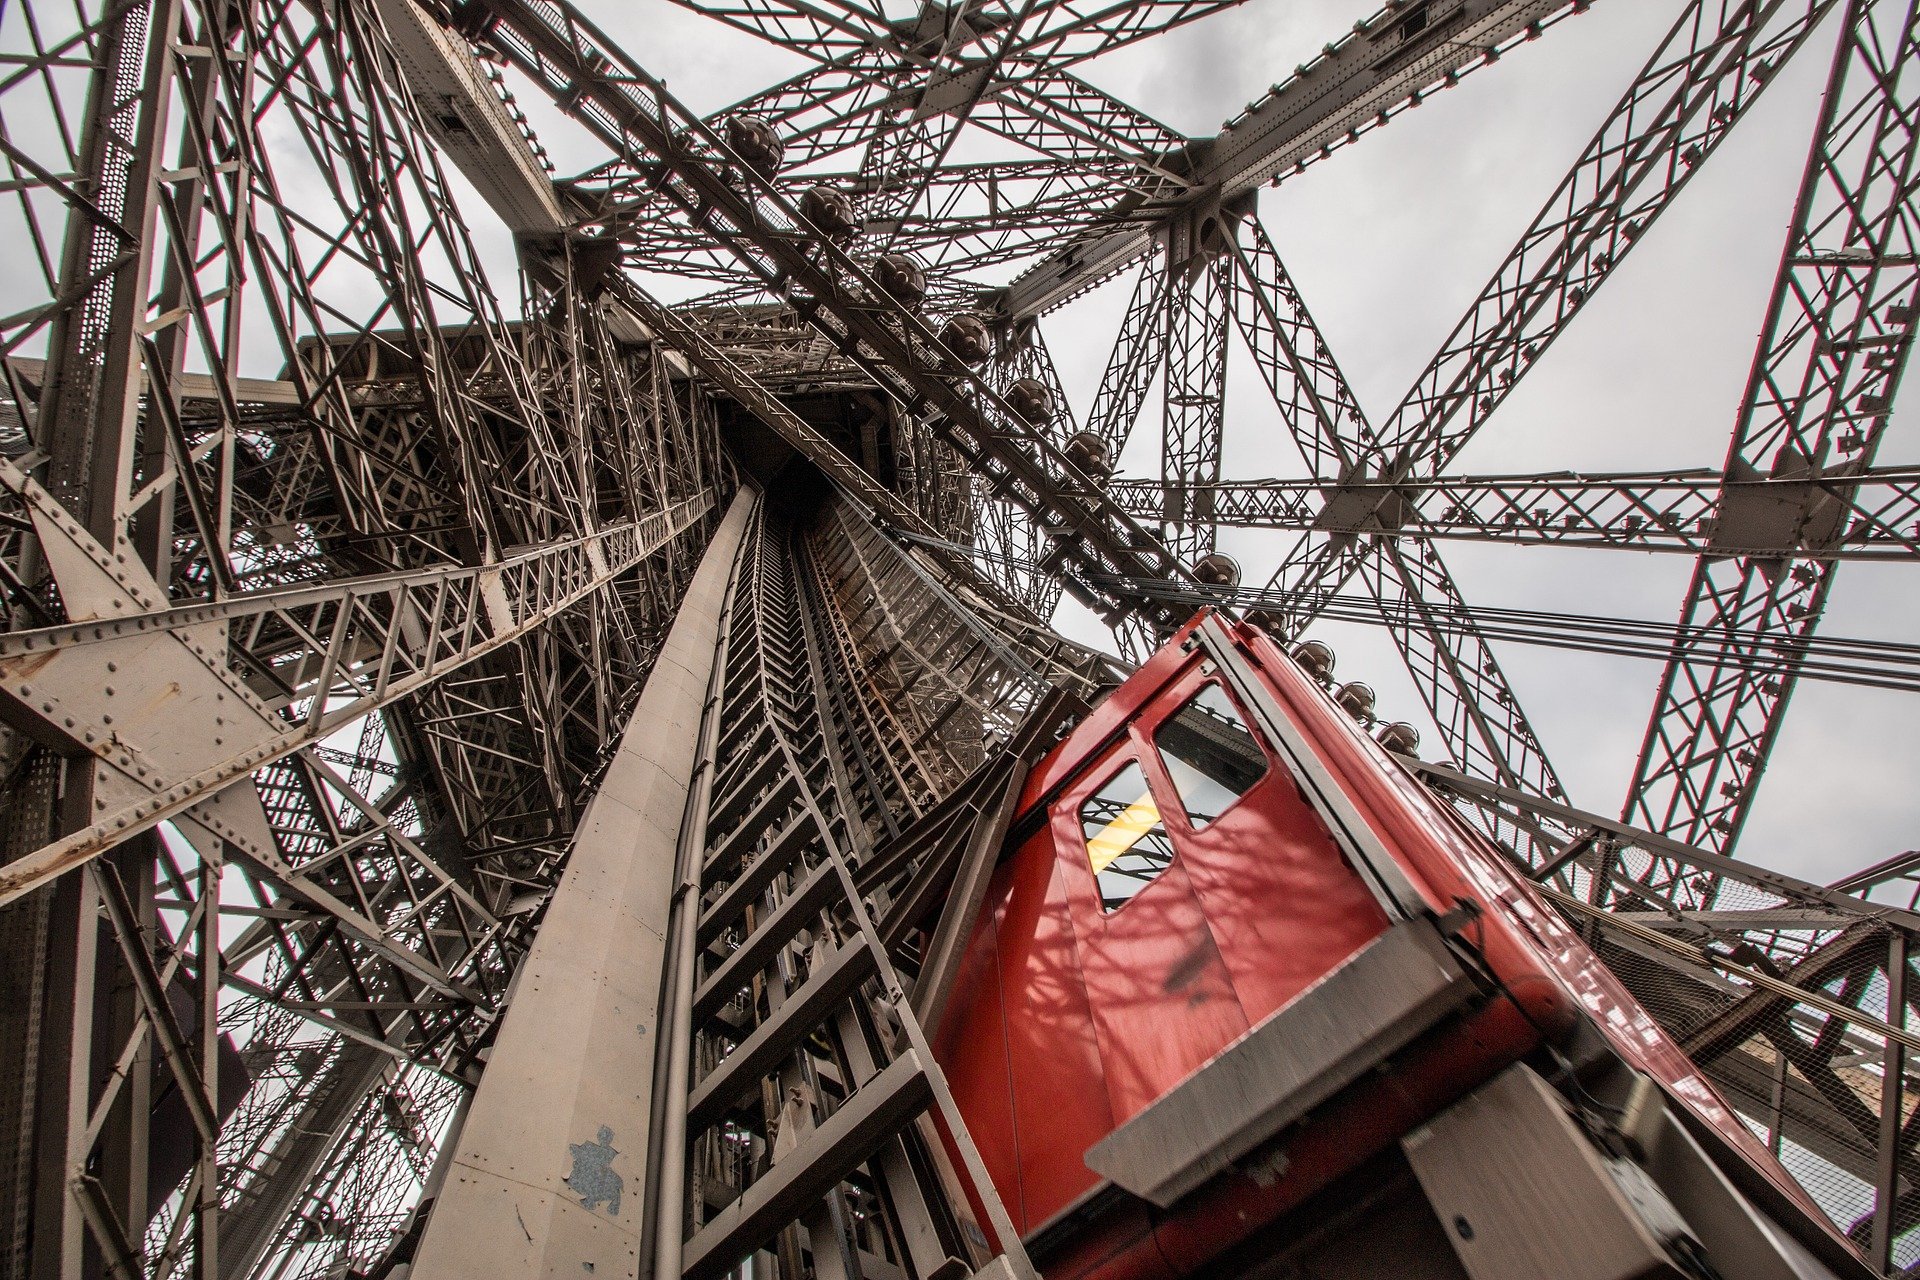 الدليل الكامل لزيارة برج إيفل في باريس , شرح الوصول للبرج و شراء التذاكر مع نصائح مفيدة